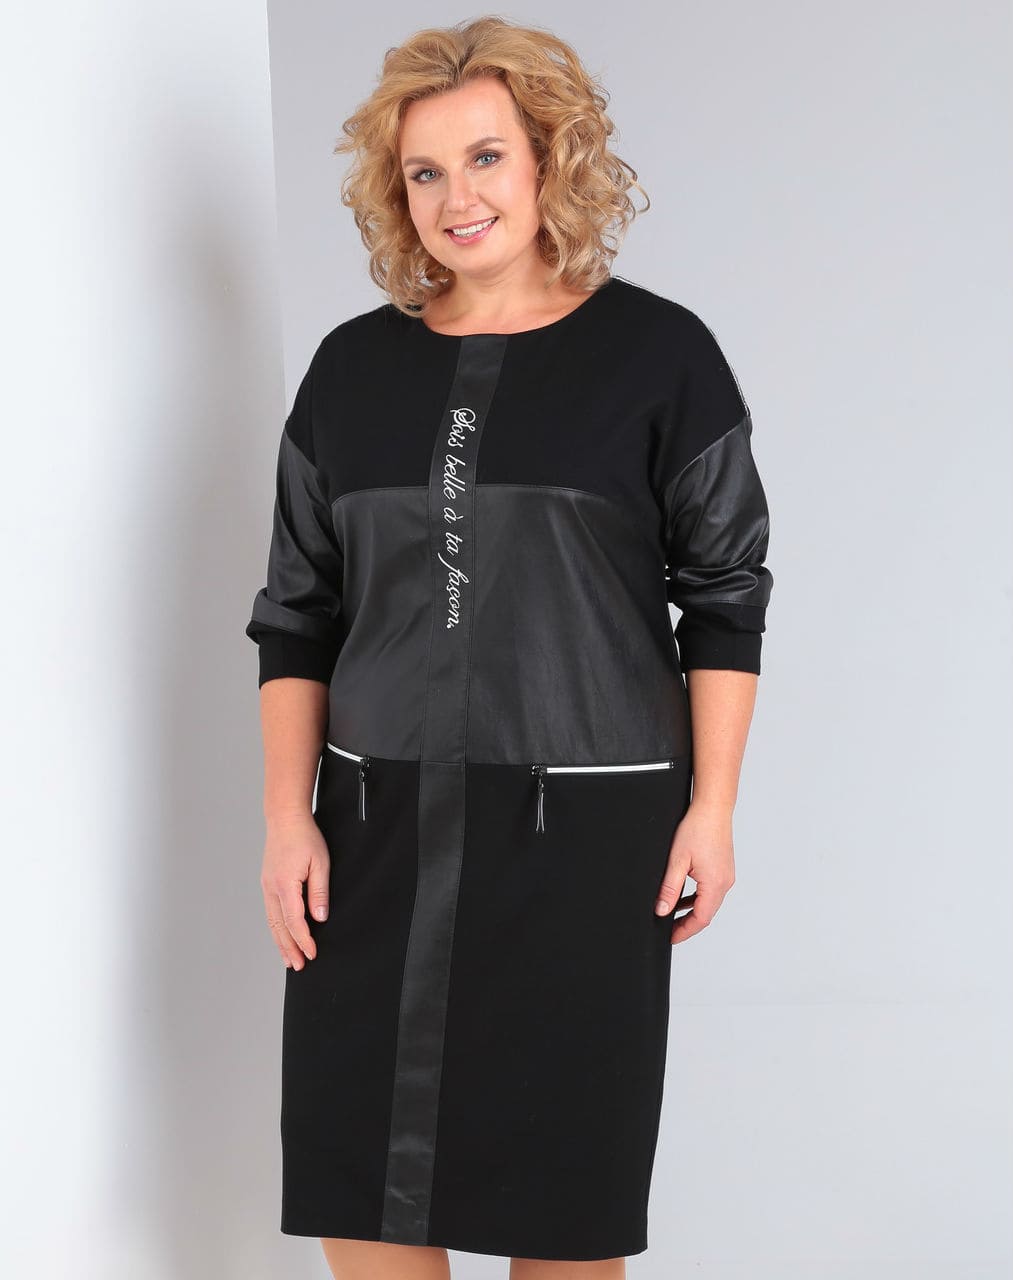 Комбинированное платье с карманами на молнии и вышивкой, черное